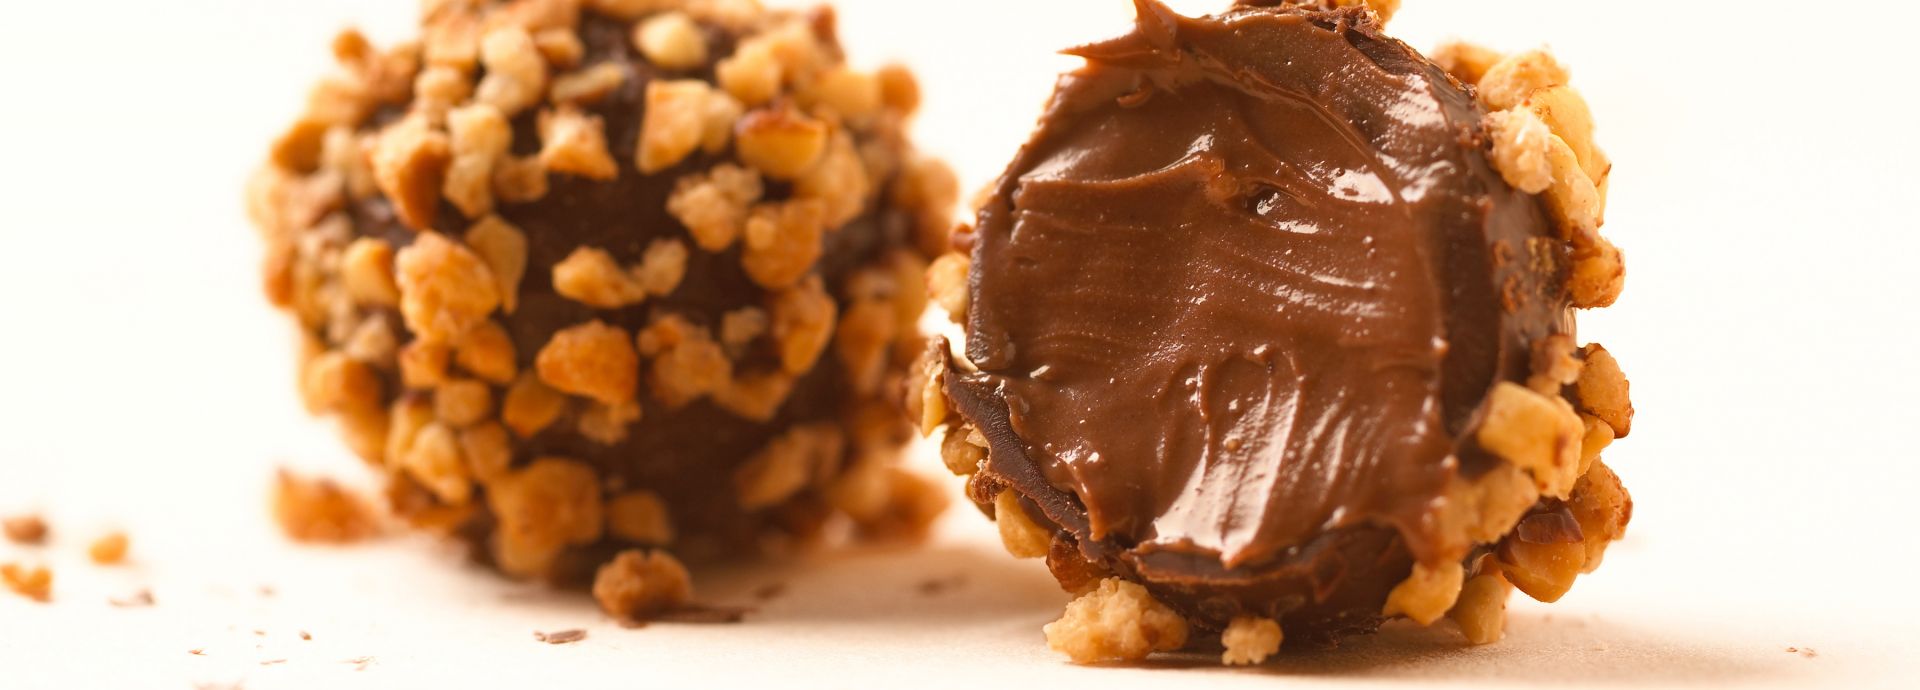 Chocolate and hazelnut truffles